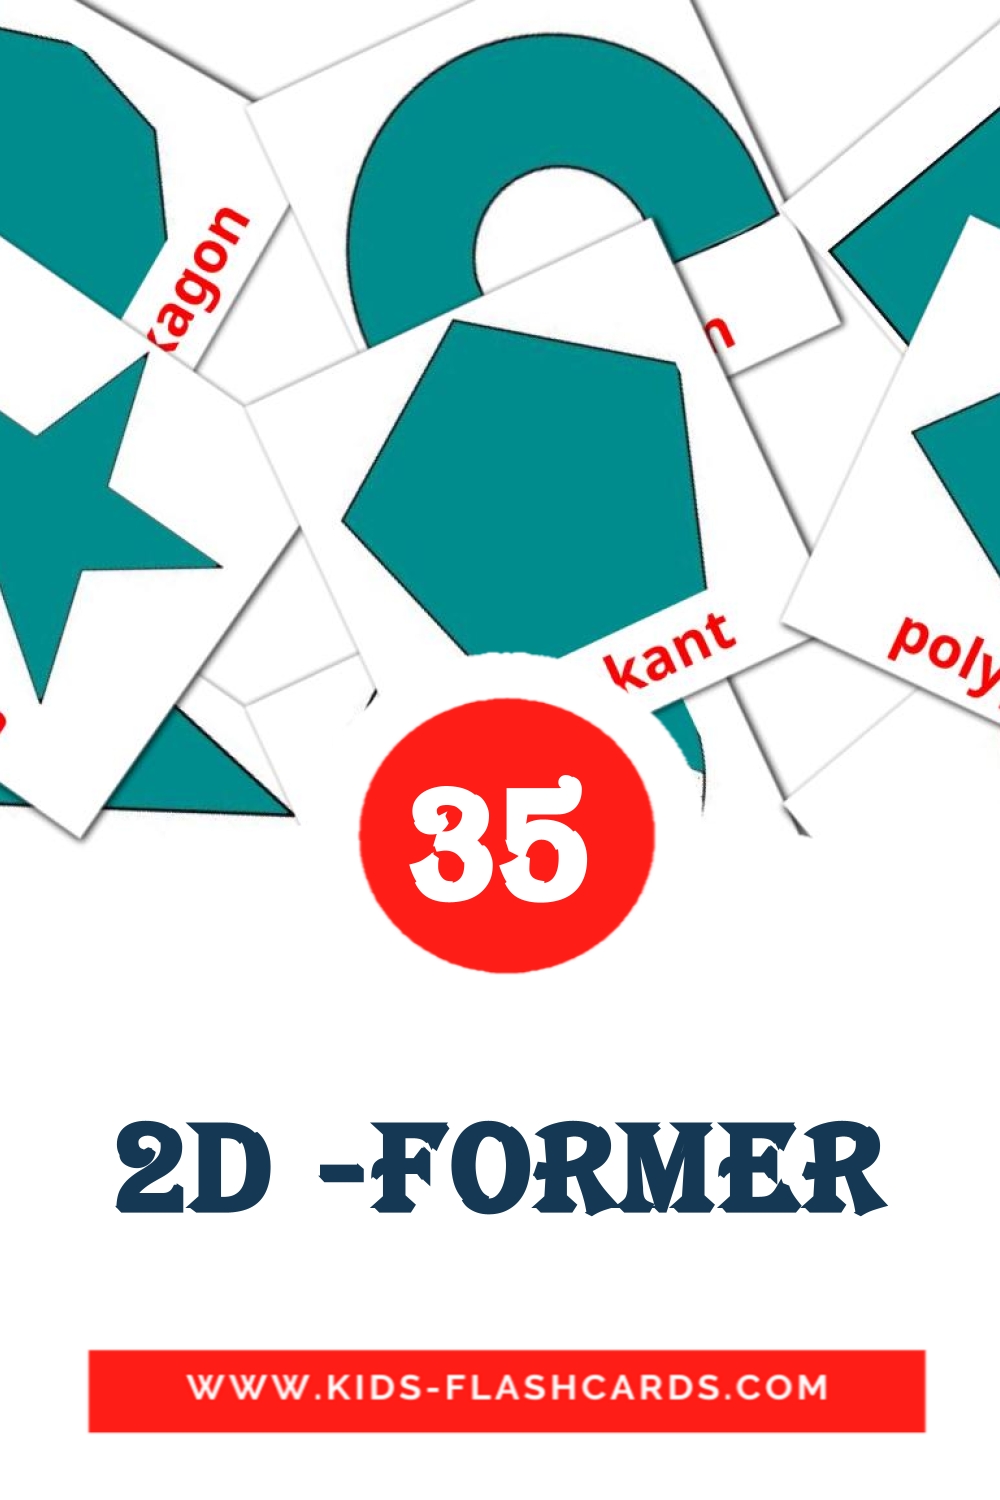 35 tarjetas didacticas de 2D -former para el jardín de infancia en sueco